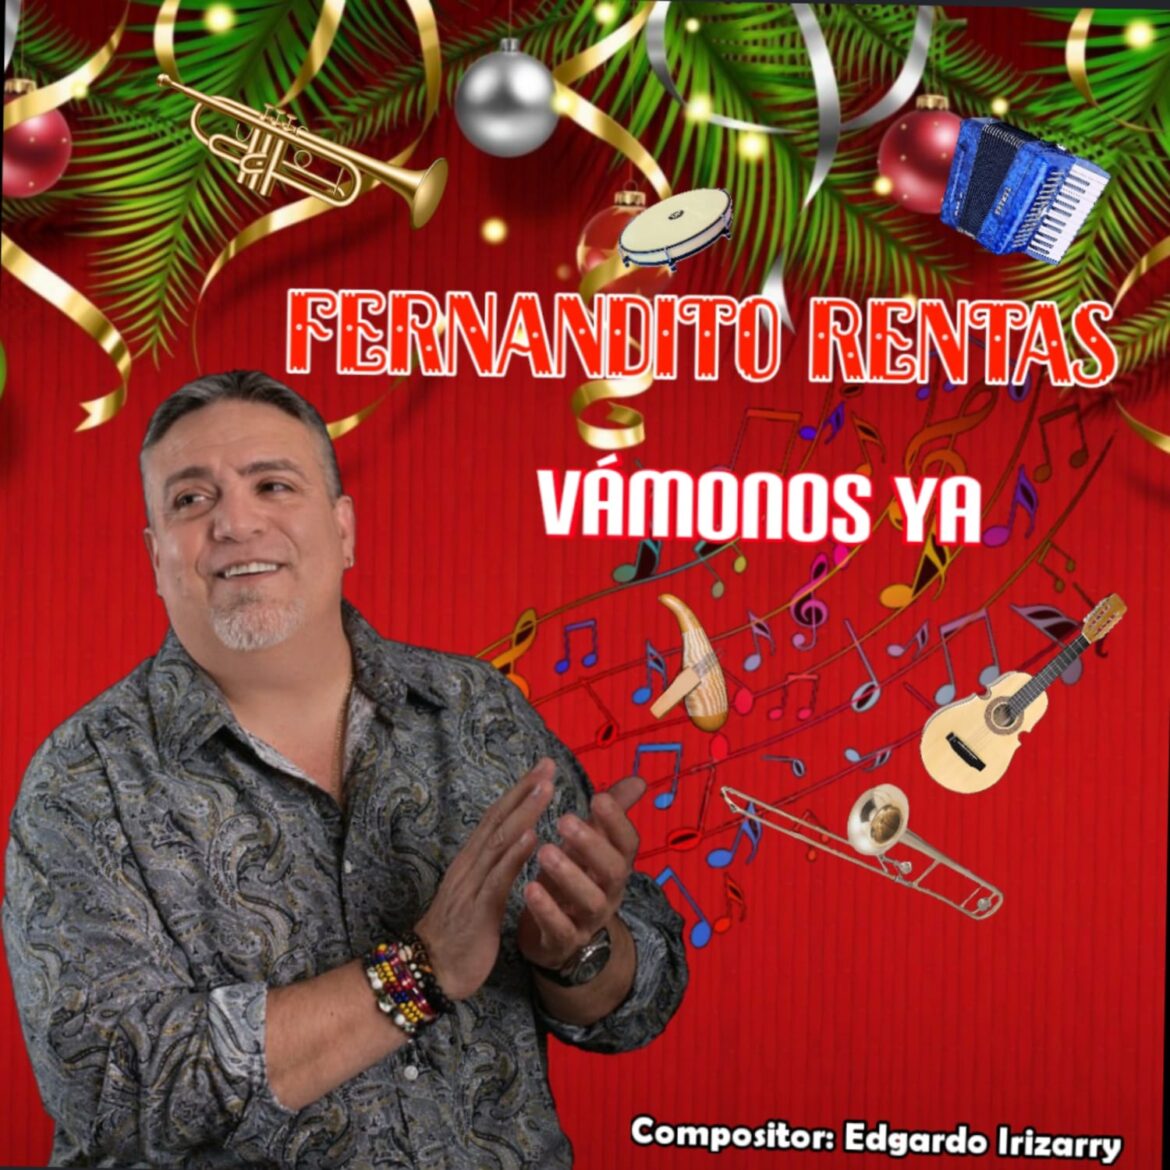 Fernandito Rentas lanza su primer sencillo navideño “Vámonos Ya”